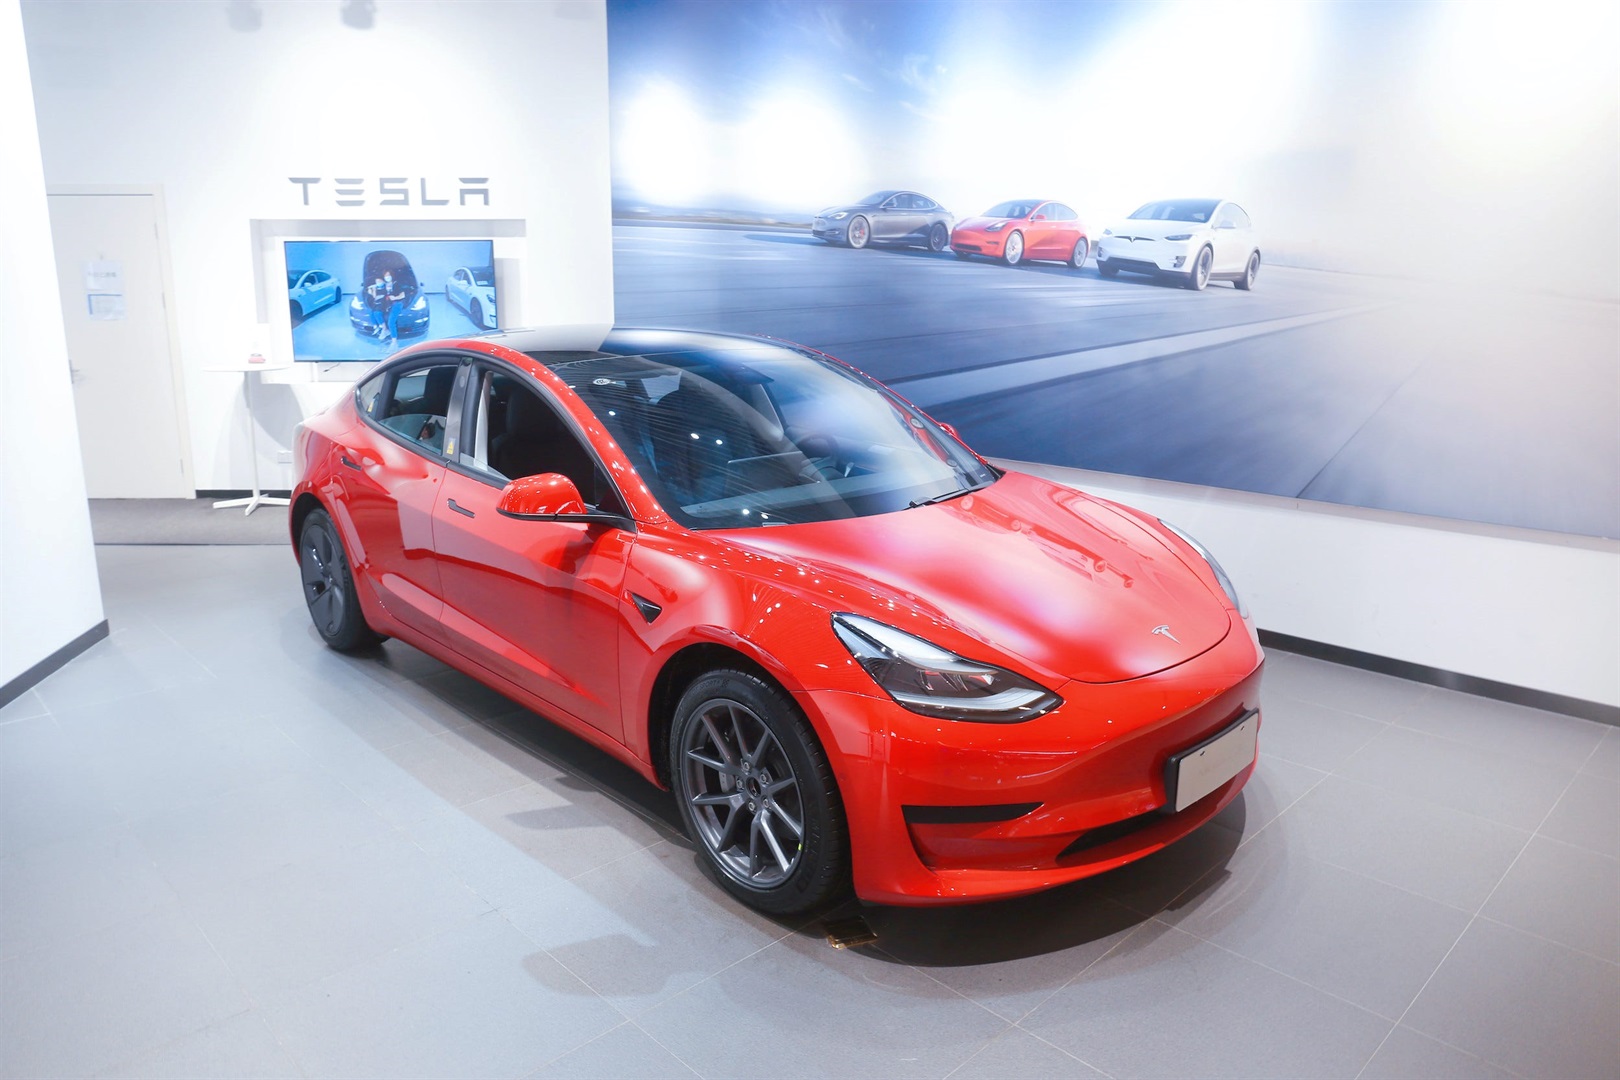 The Tesla Model 3. Xing Yun/Costfoto/Future Publishing via Getty Images